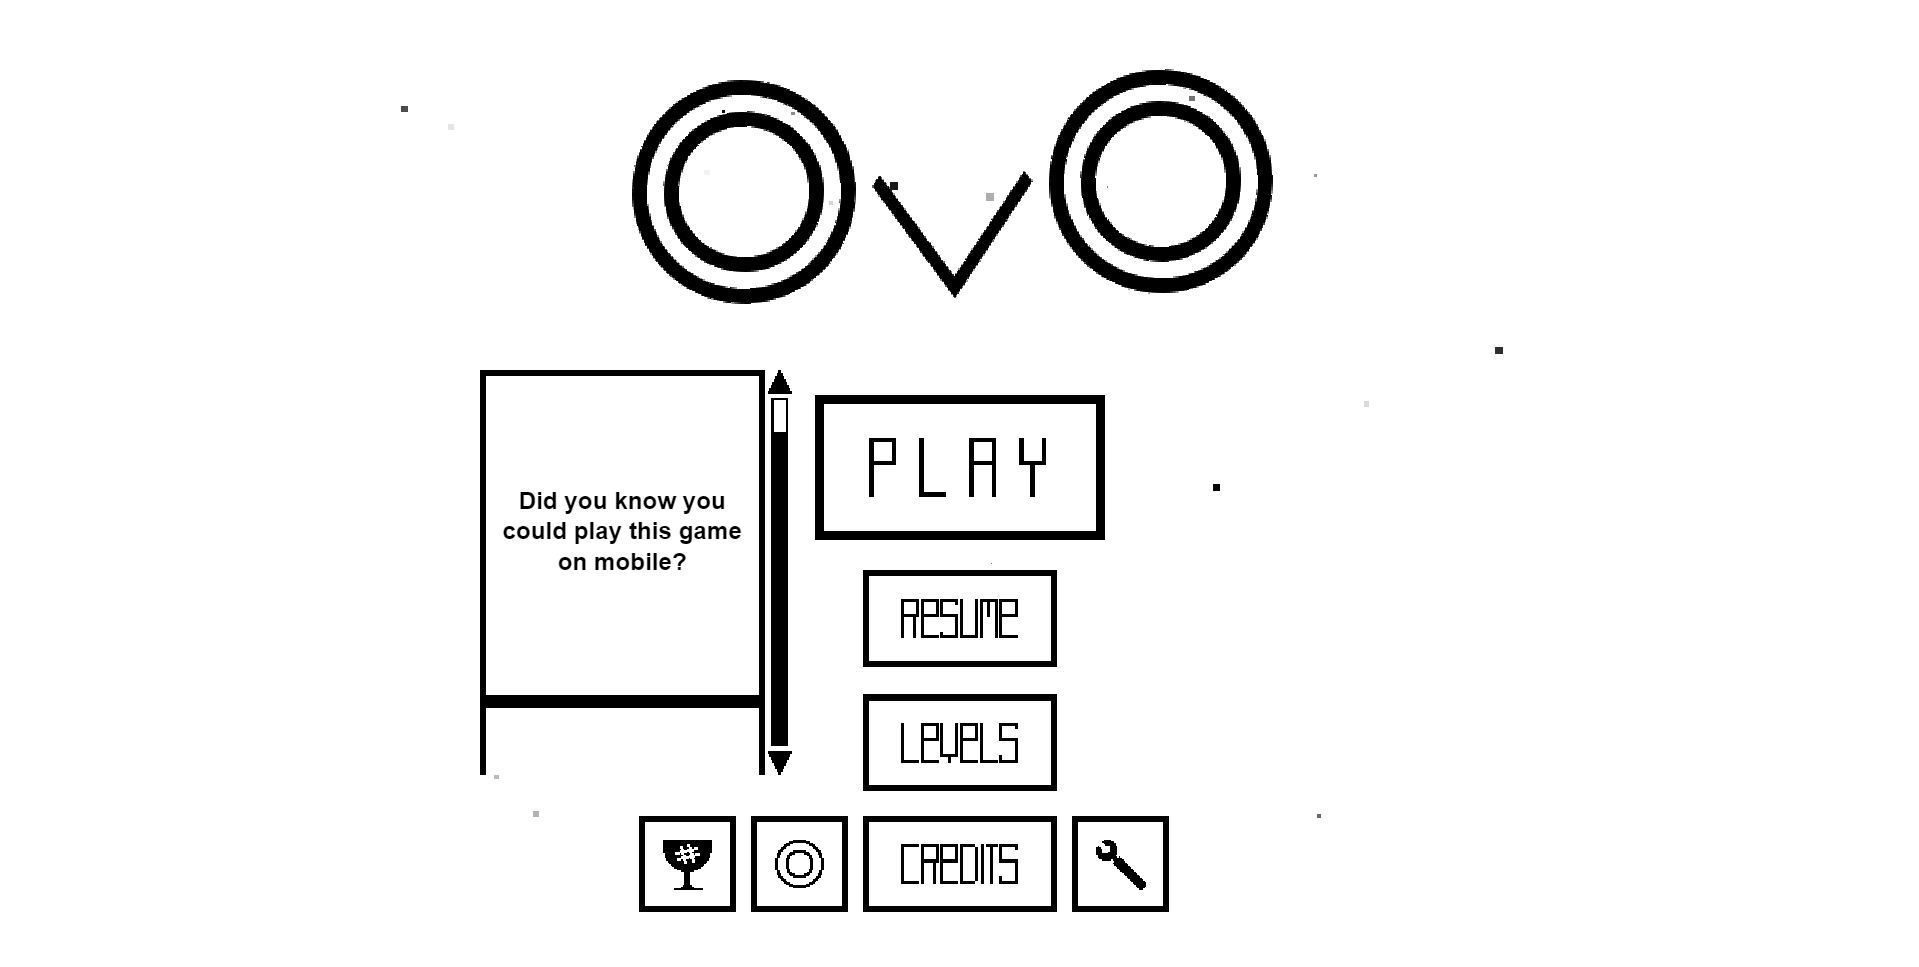 OvO 2 - Play OvO 2 On OVO Game